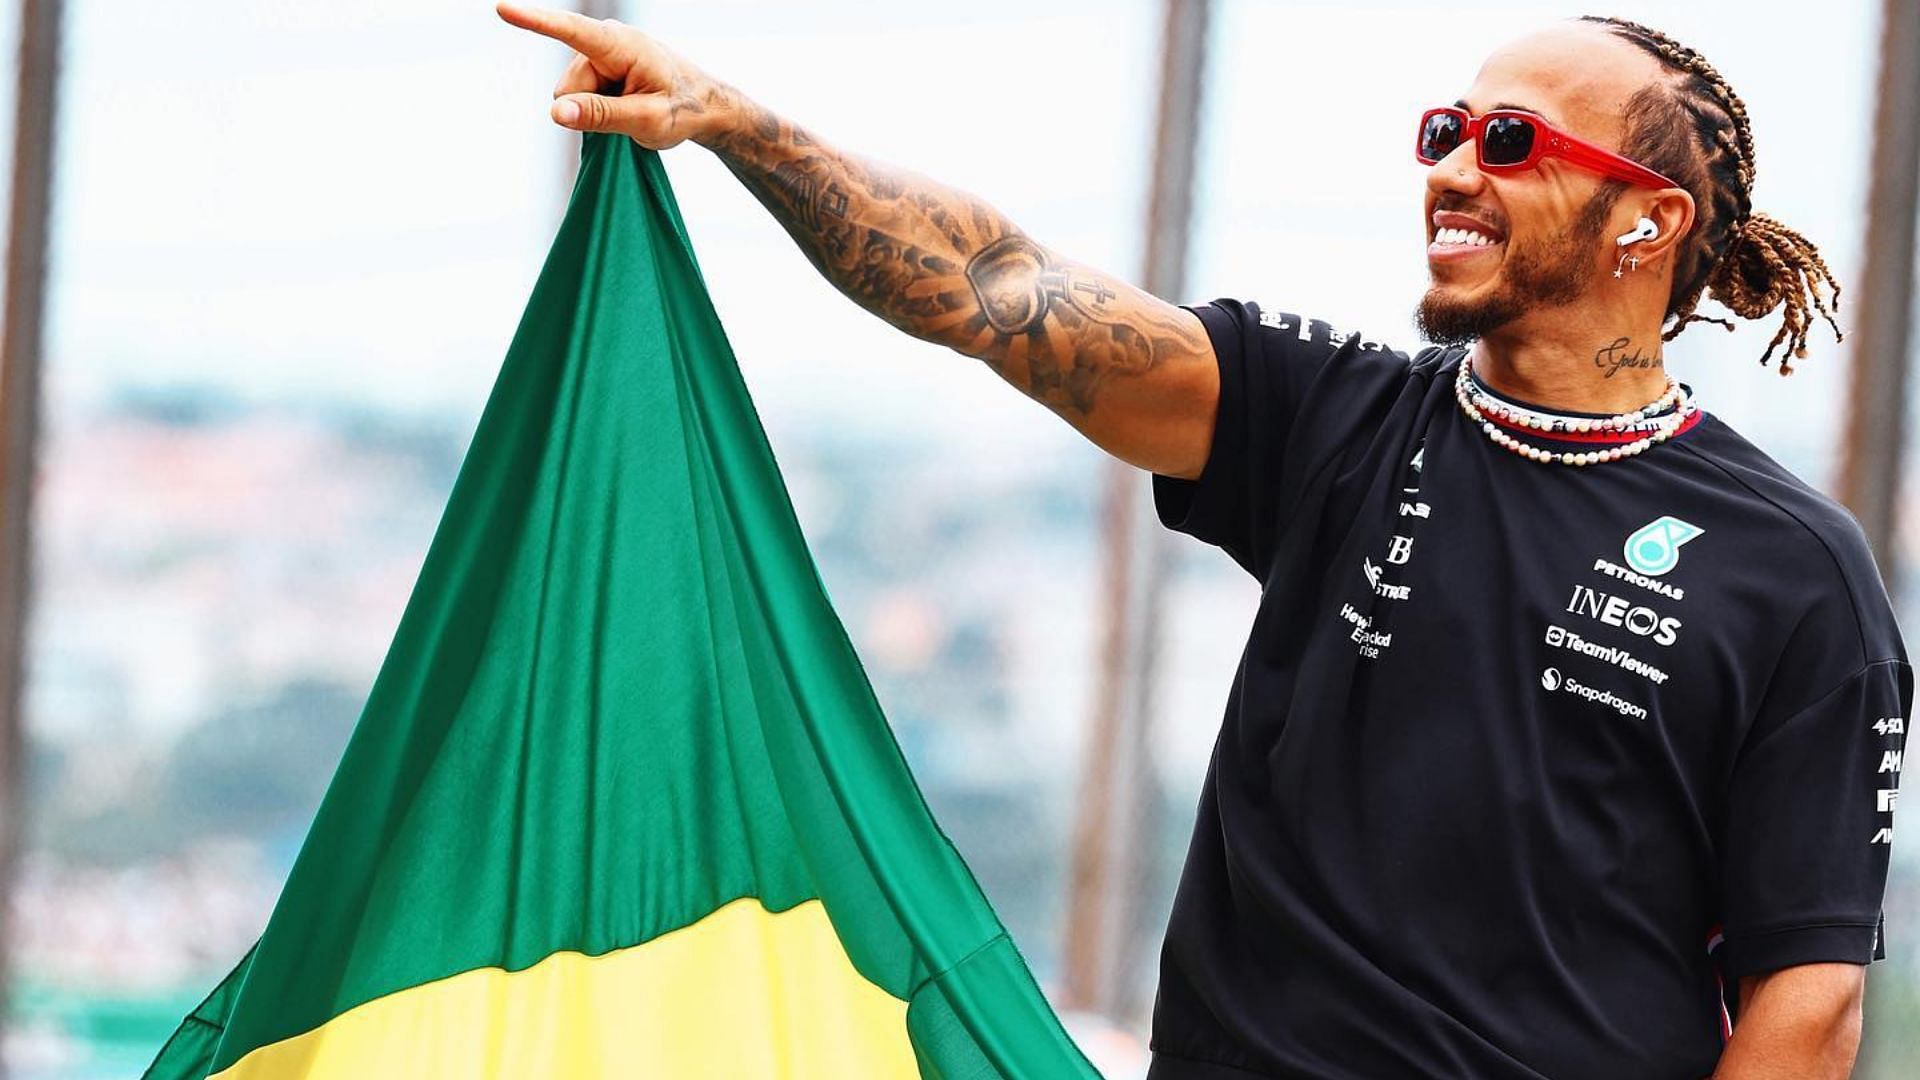 Lewis Hamilton in Brazil (Image via @lewishamilton/ Instagram)